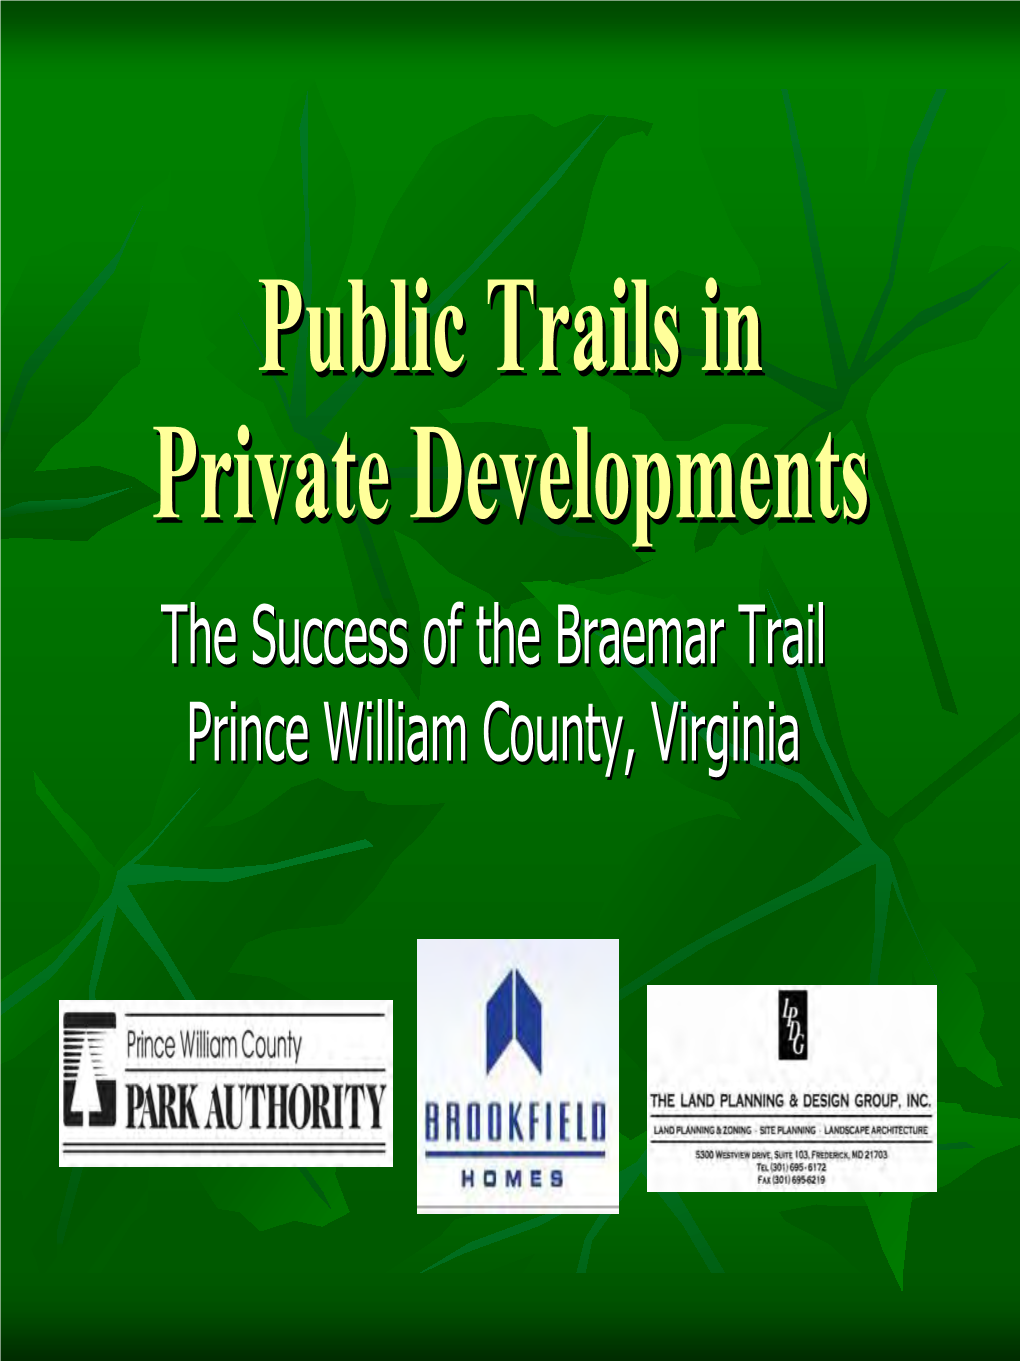 Patti Pakkala, Planner, Prince William County Park Authority